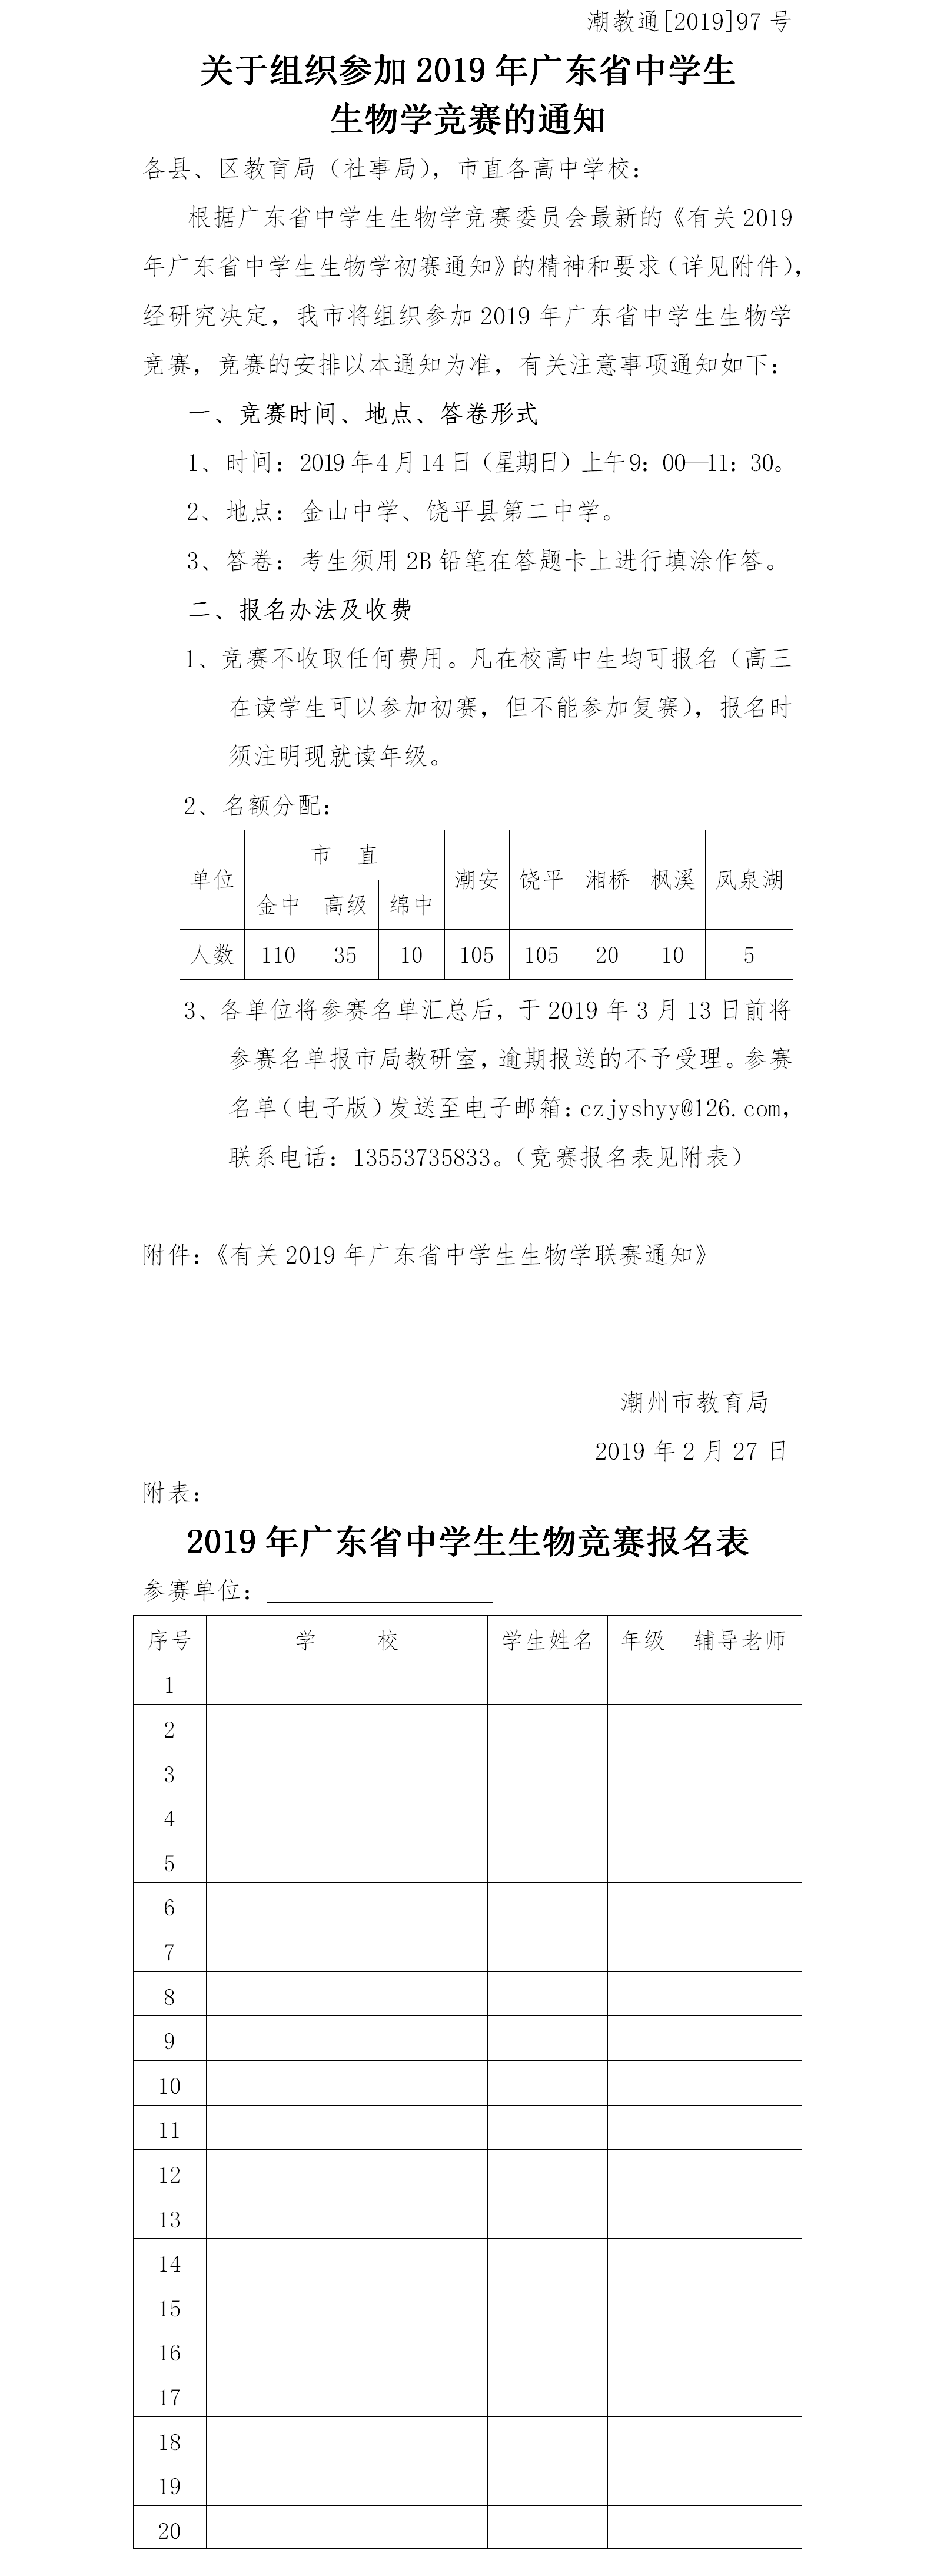 关于2019年广东省中学生生物联赛的补充通知（市级通知）.png